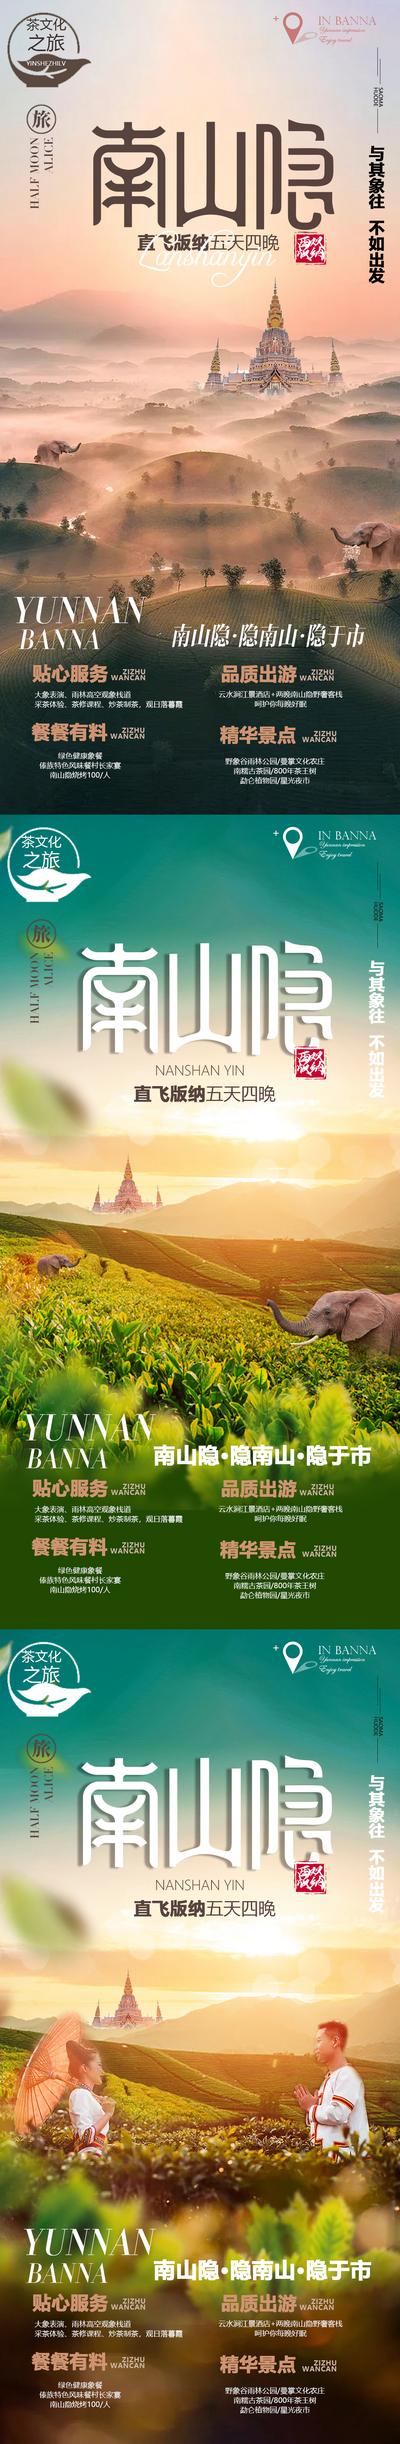 南门网 海报 旅游 云南 西双版纳 大象 美景 路线 系列